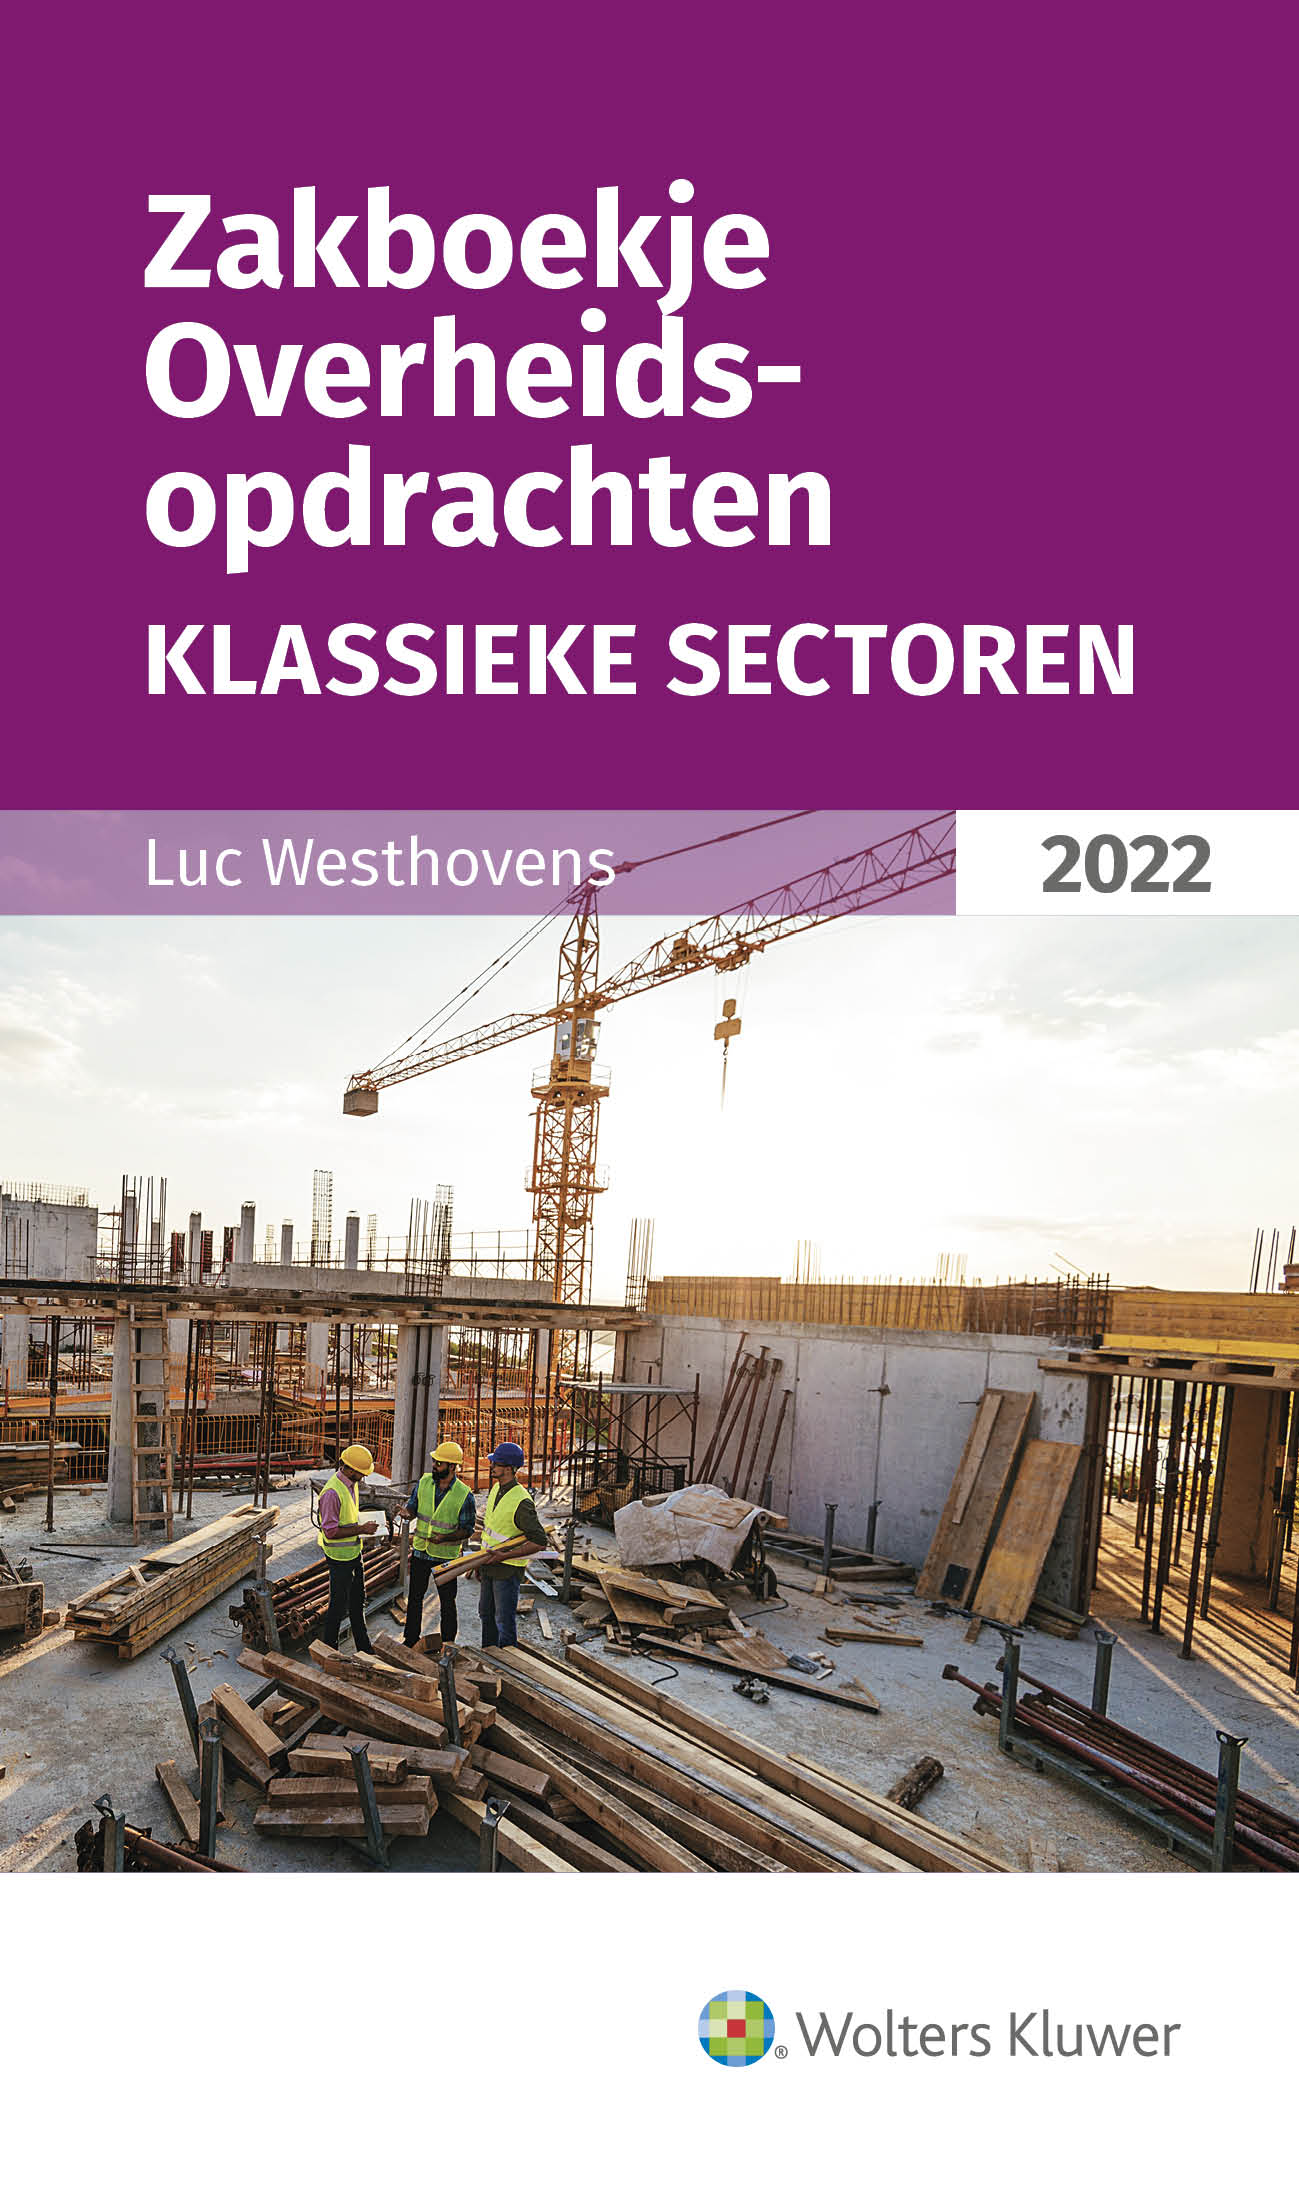 Zakboekje Overheidsopdrachten - Klassieke sectoren 2022